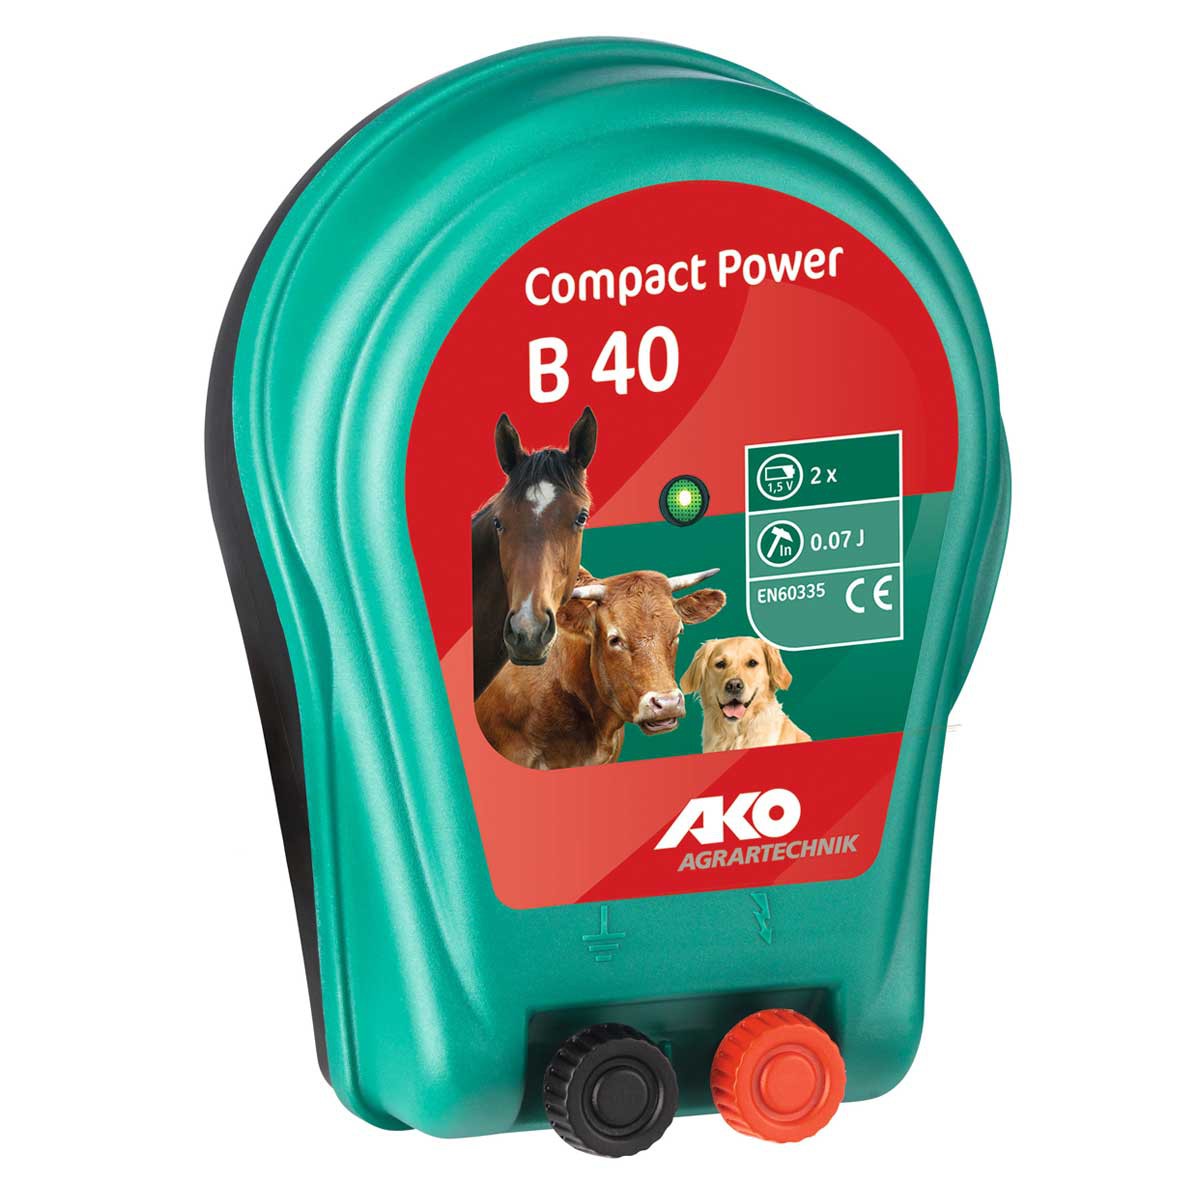 AKO Compact Power B40 akkumulátor készülék 3V, 0,07 Joule